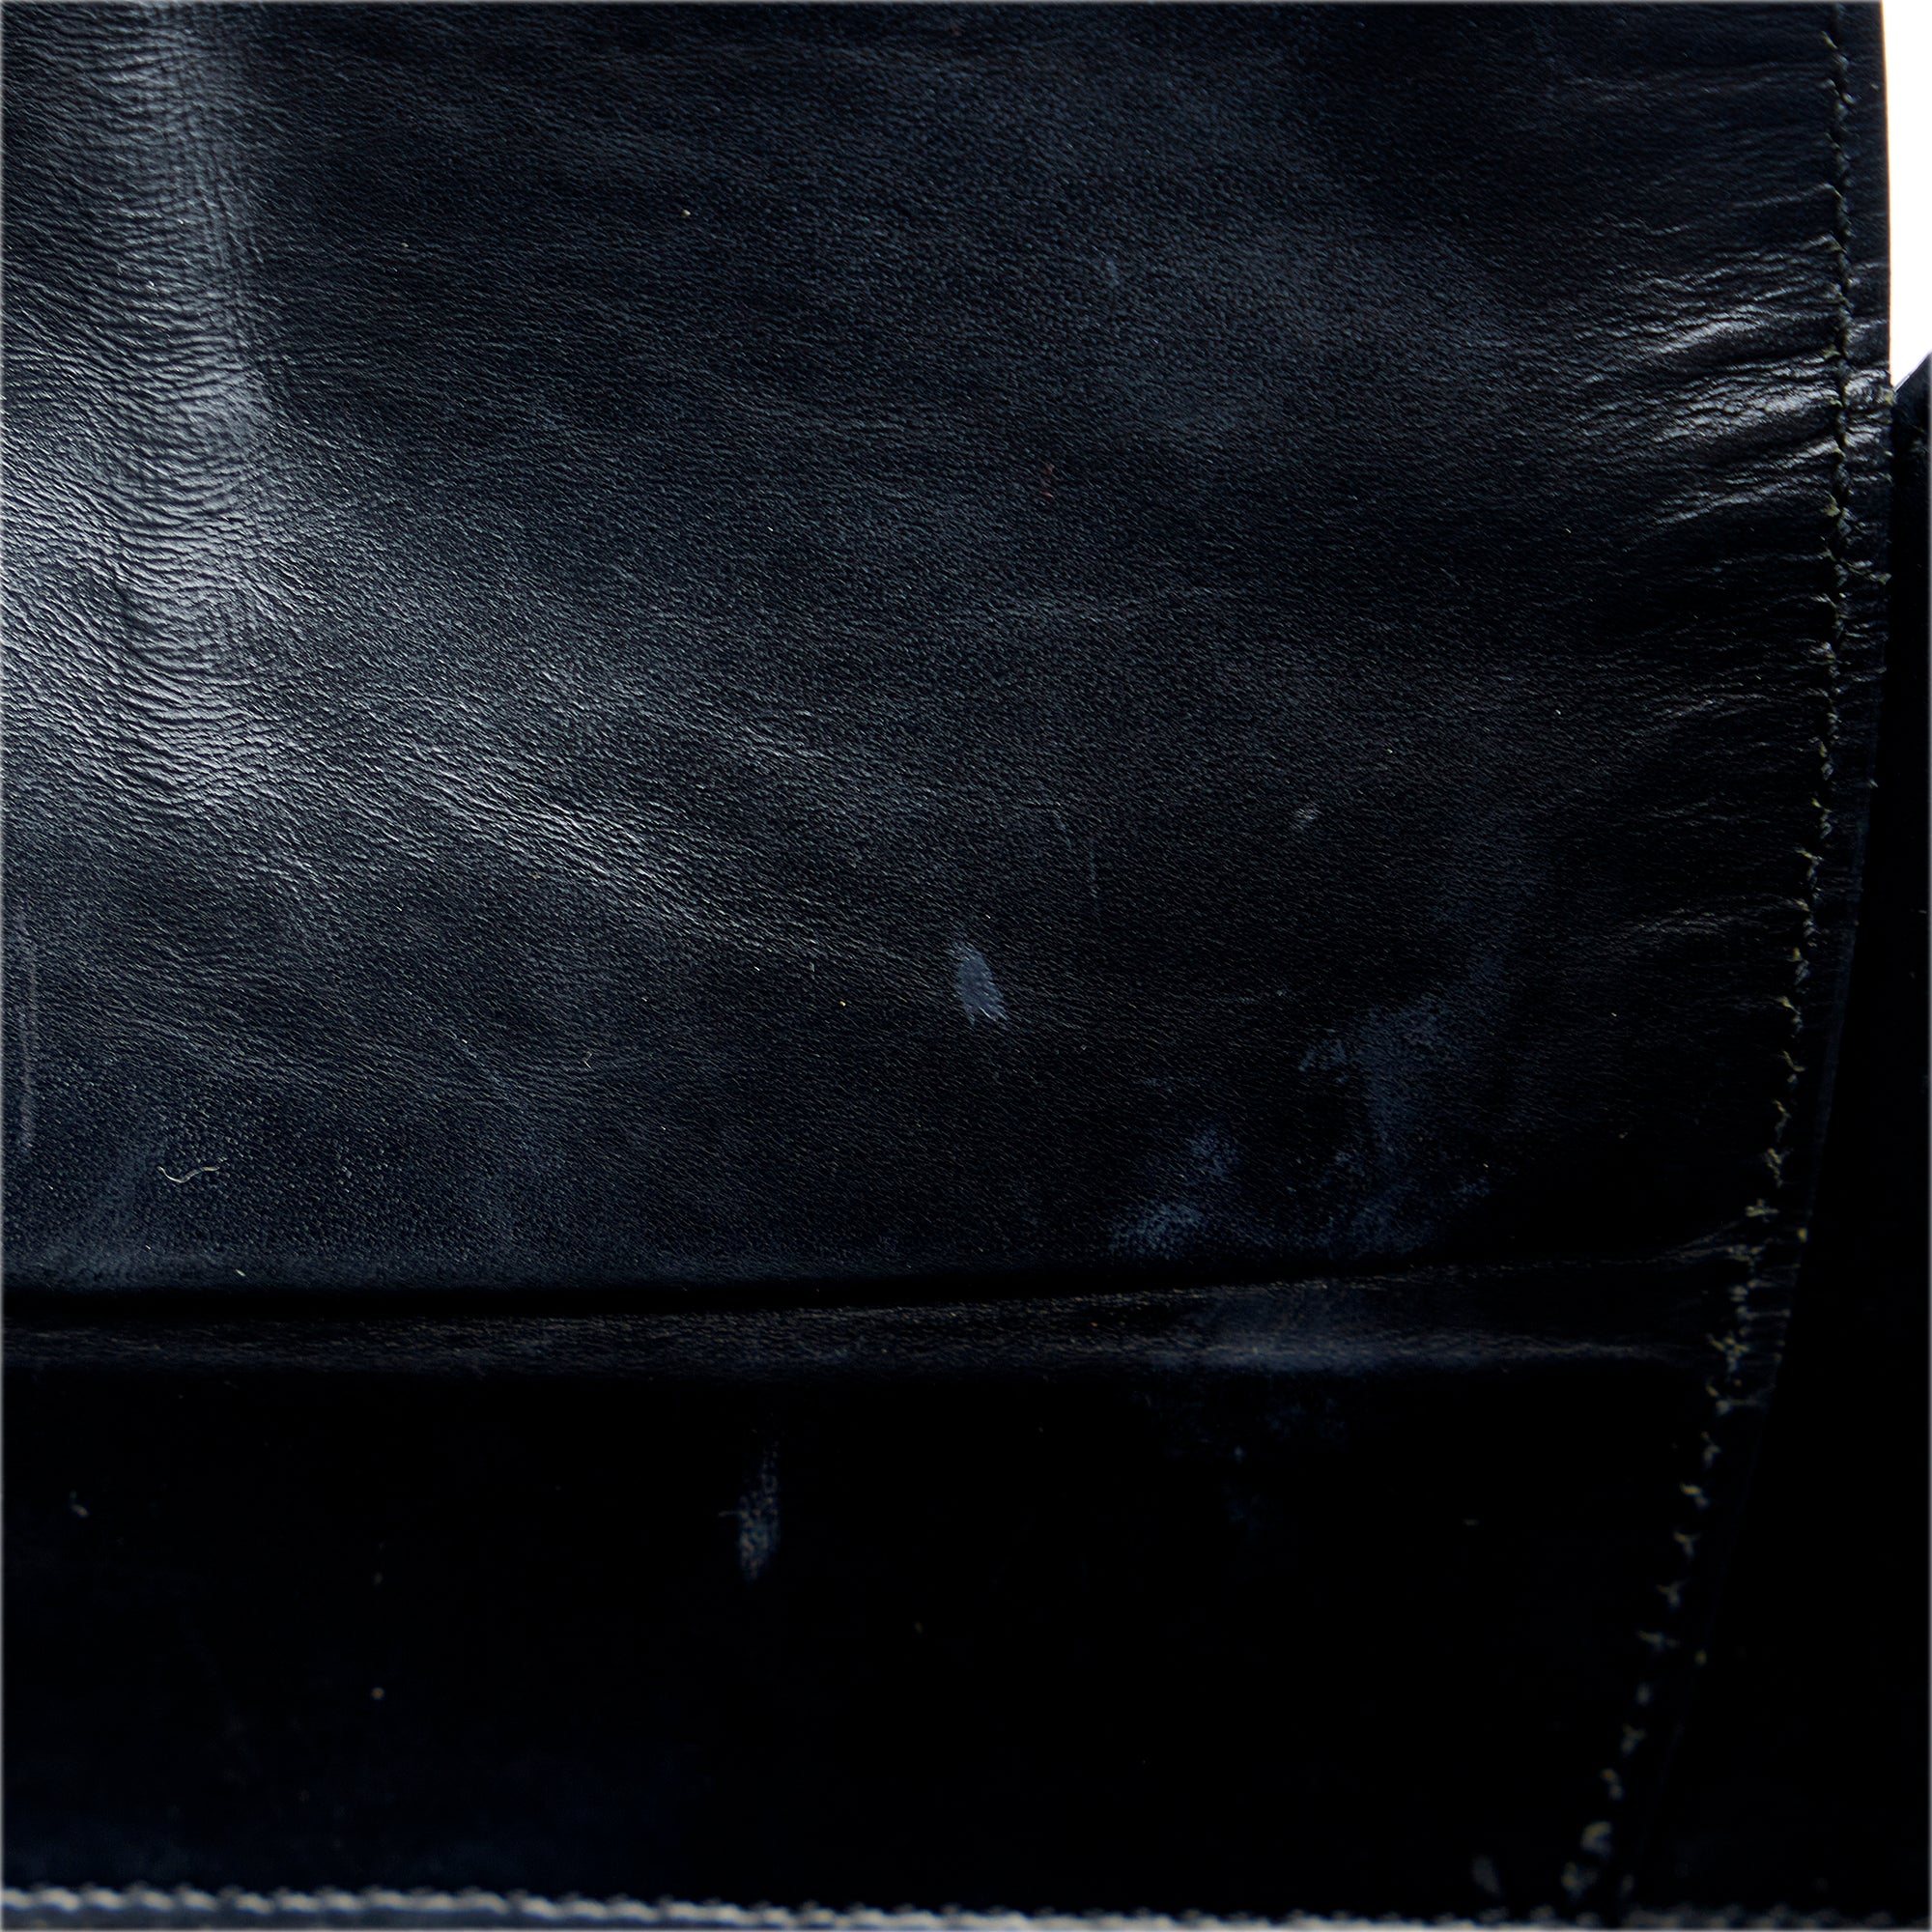 ExBrands- authentic Louis Vuitton. Brown epi leather Verseau model handbag